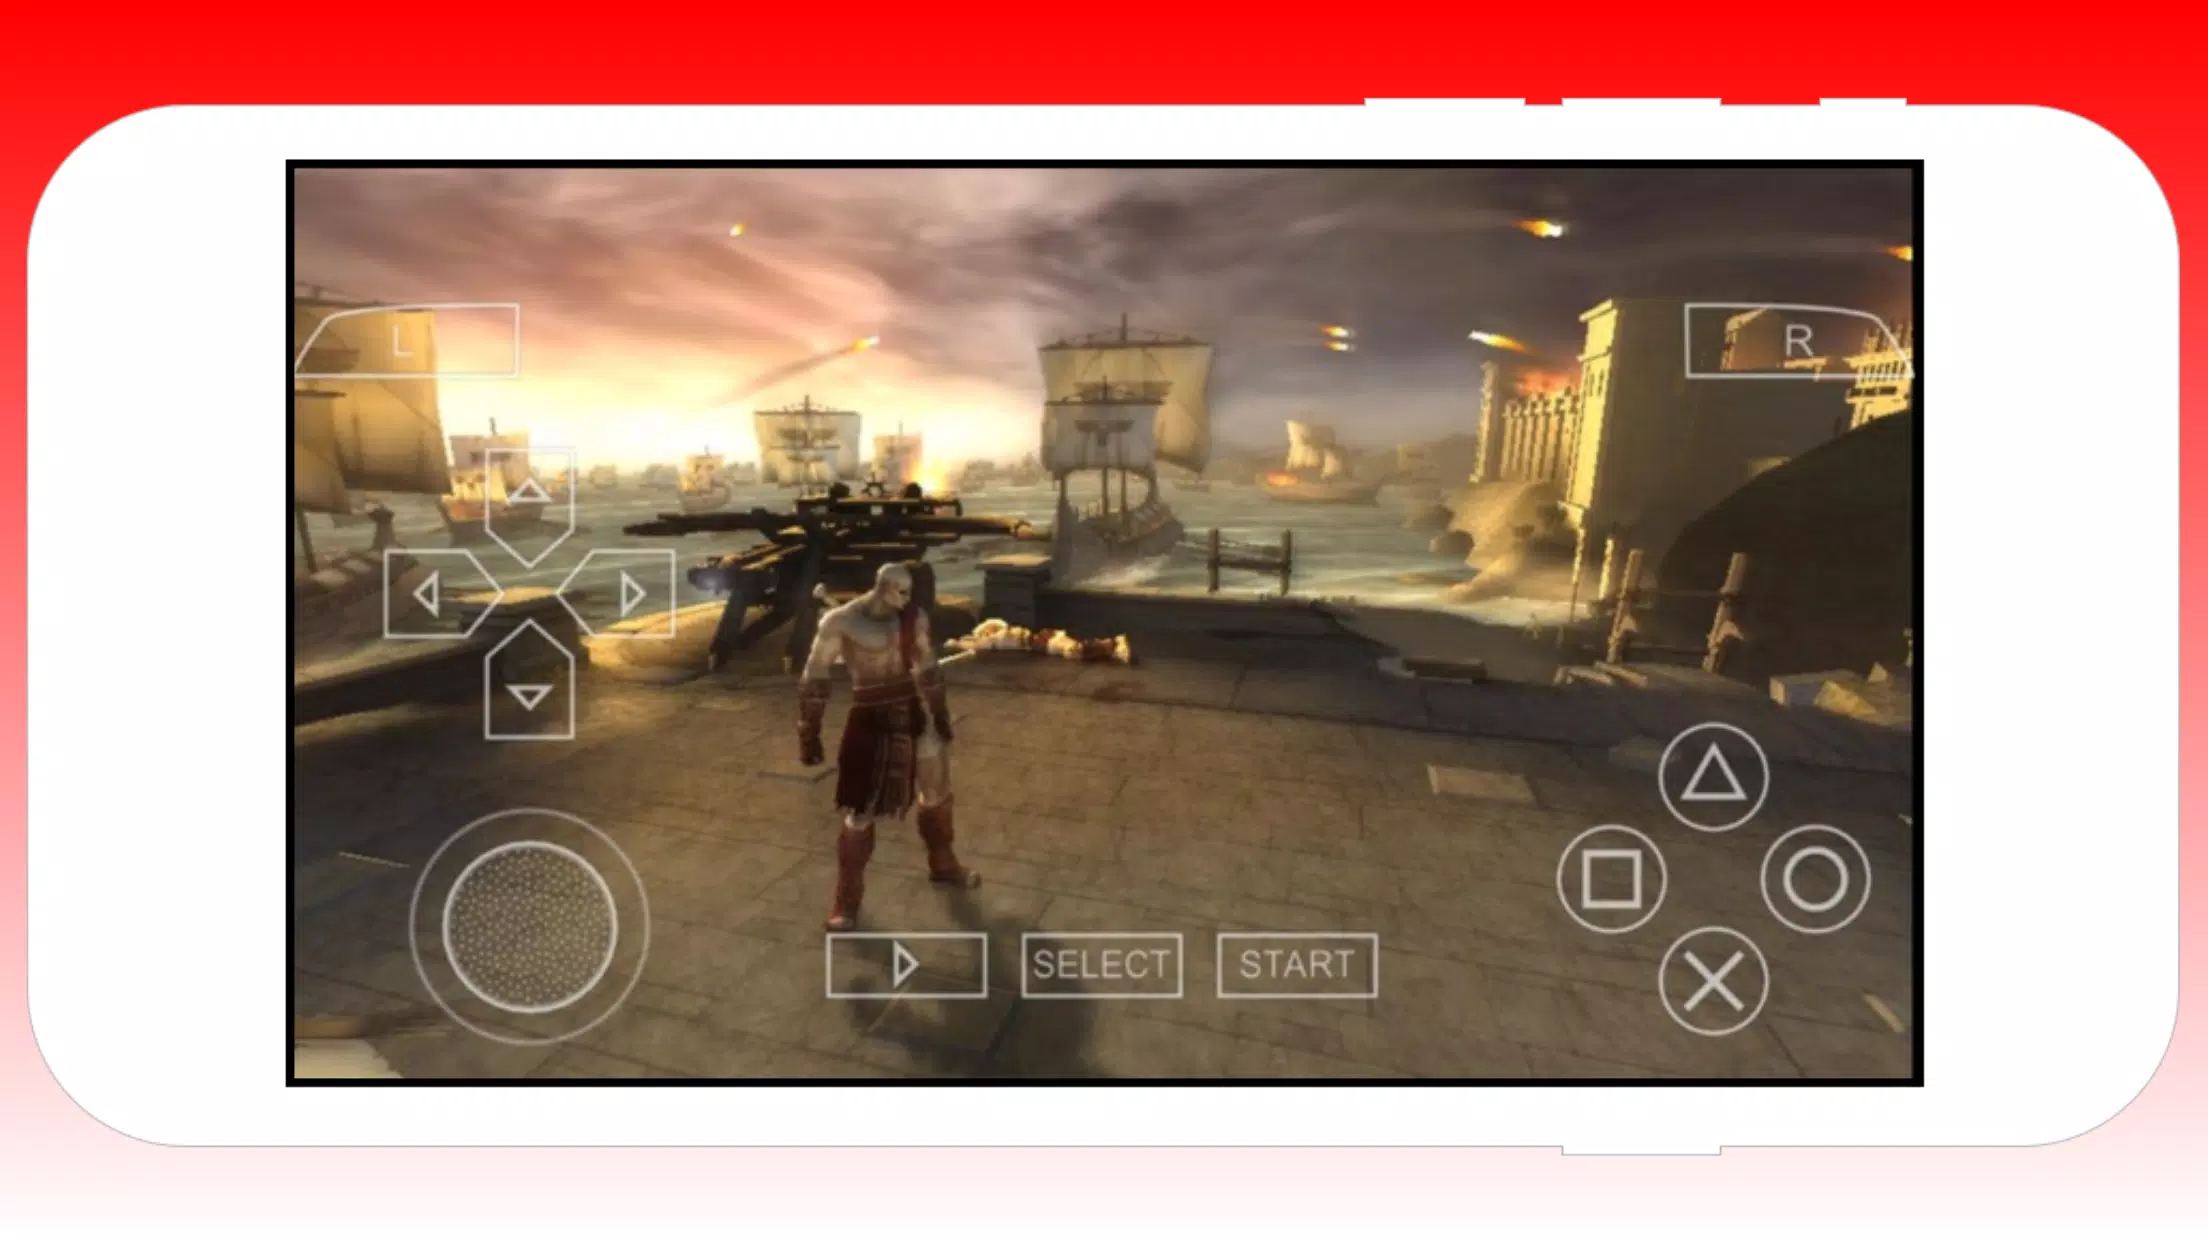 Jogos de PSP Emulator para Android: PSP Emulator APK (Android Game) -  Baixar Grátis